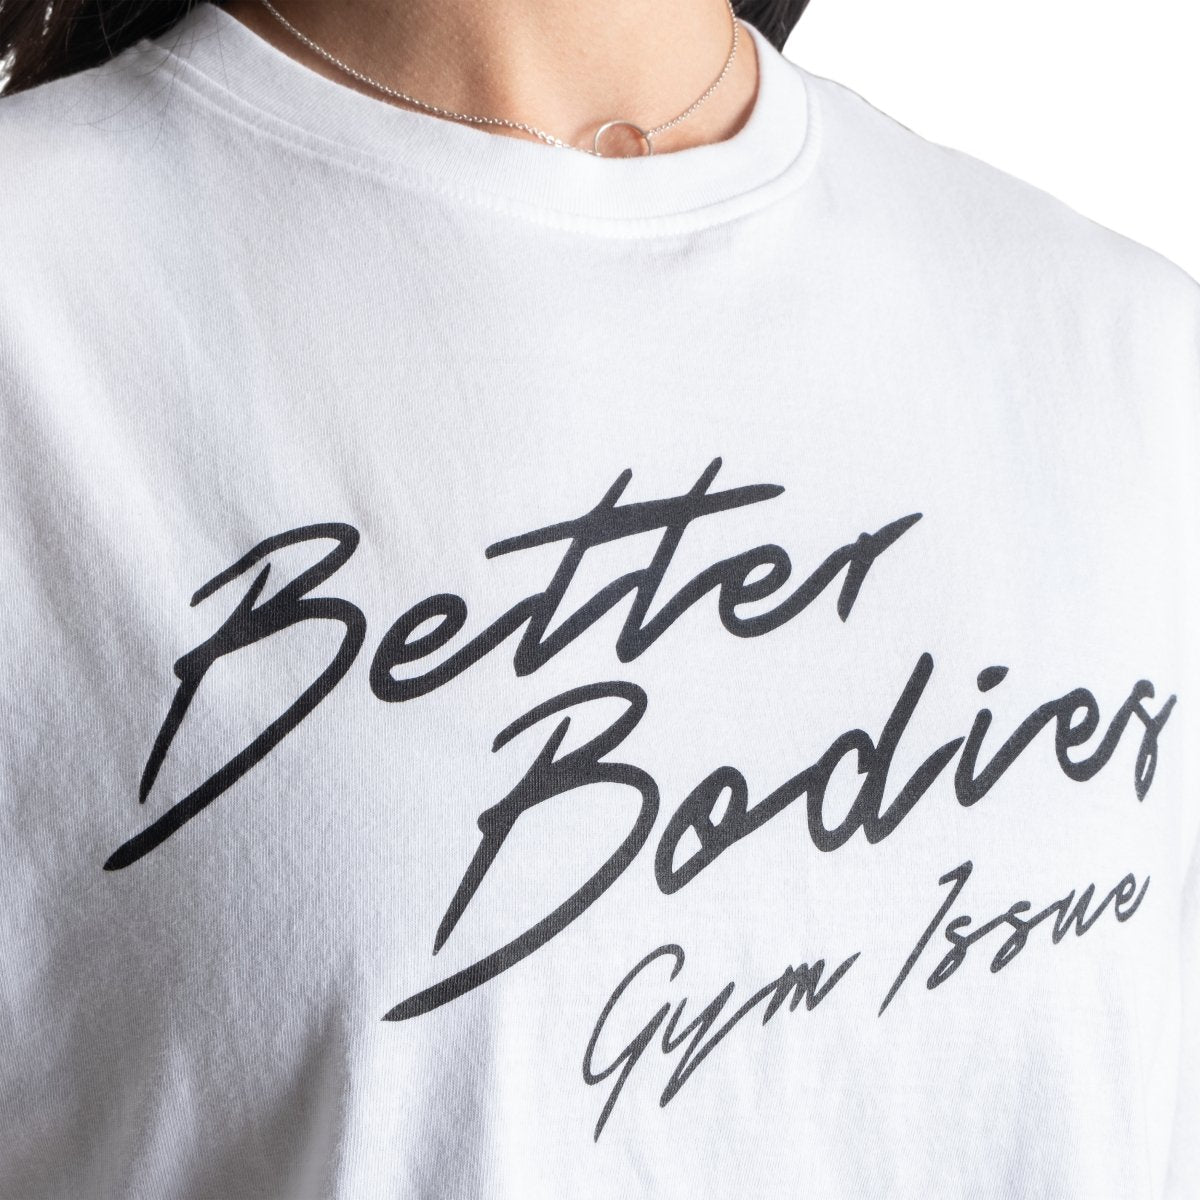 Better Bodies Gym Issue Tee - White - Urban Gym Wear